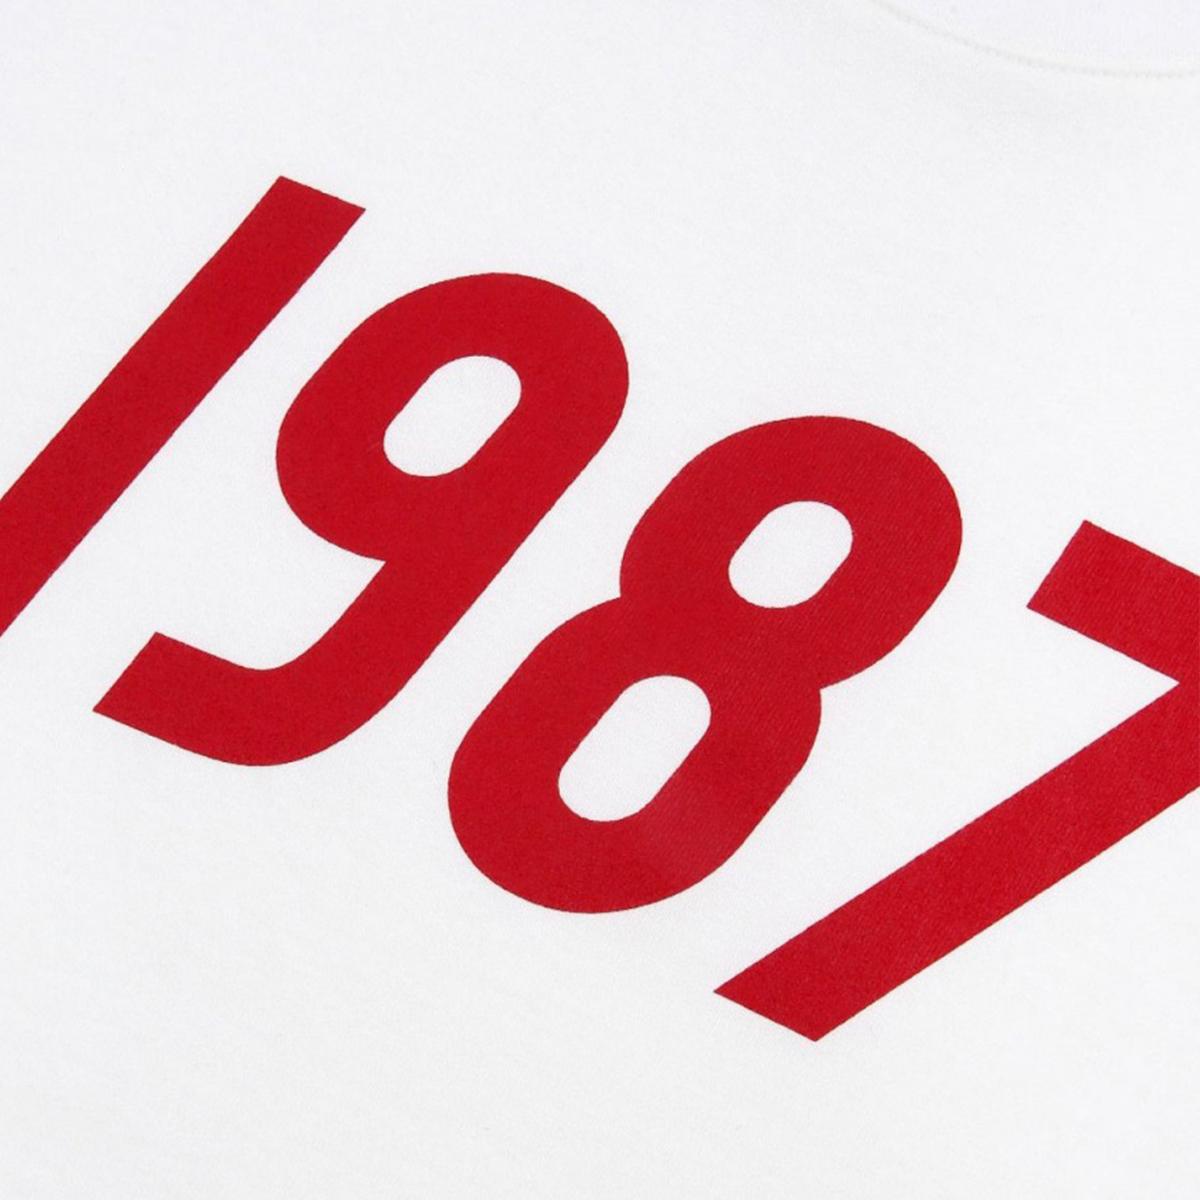 1987 LOGO短袖上衣（白色）